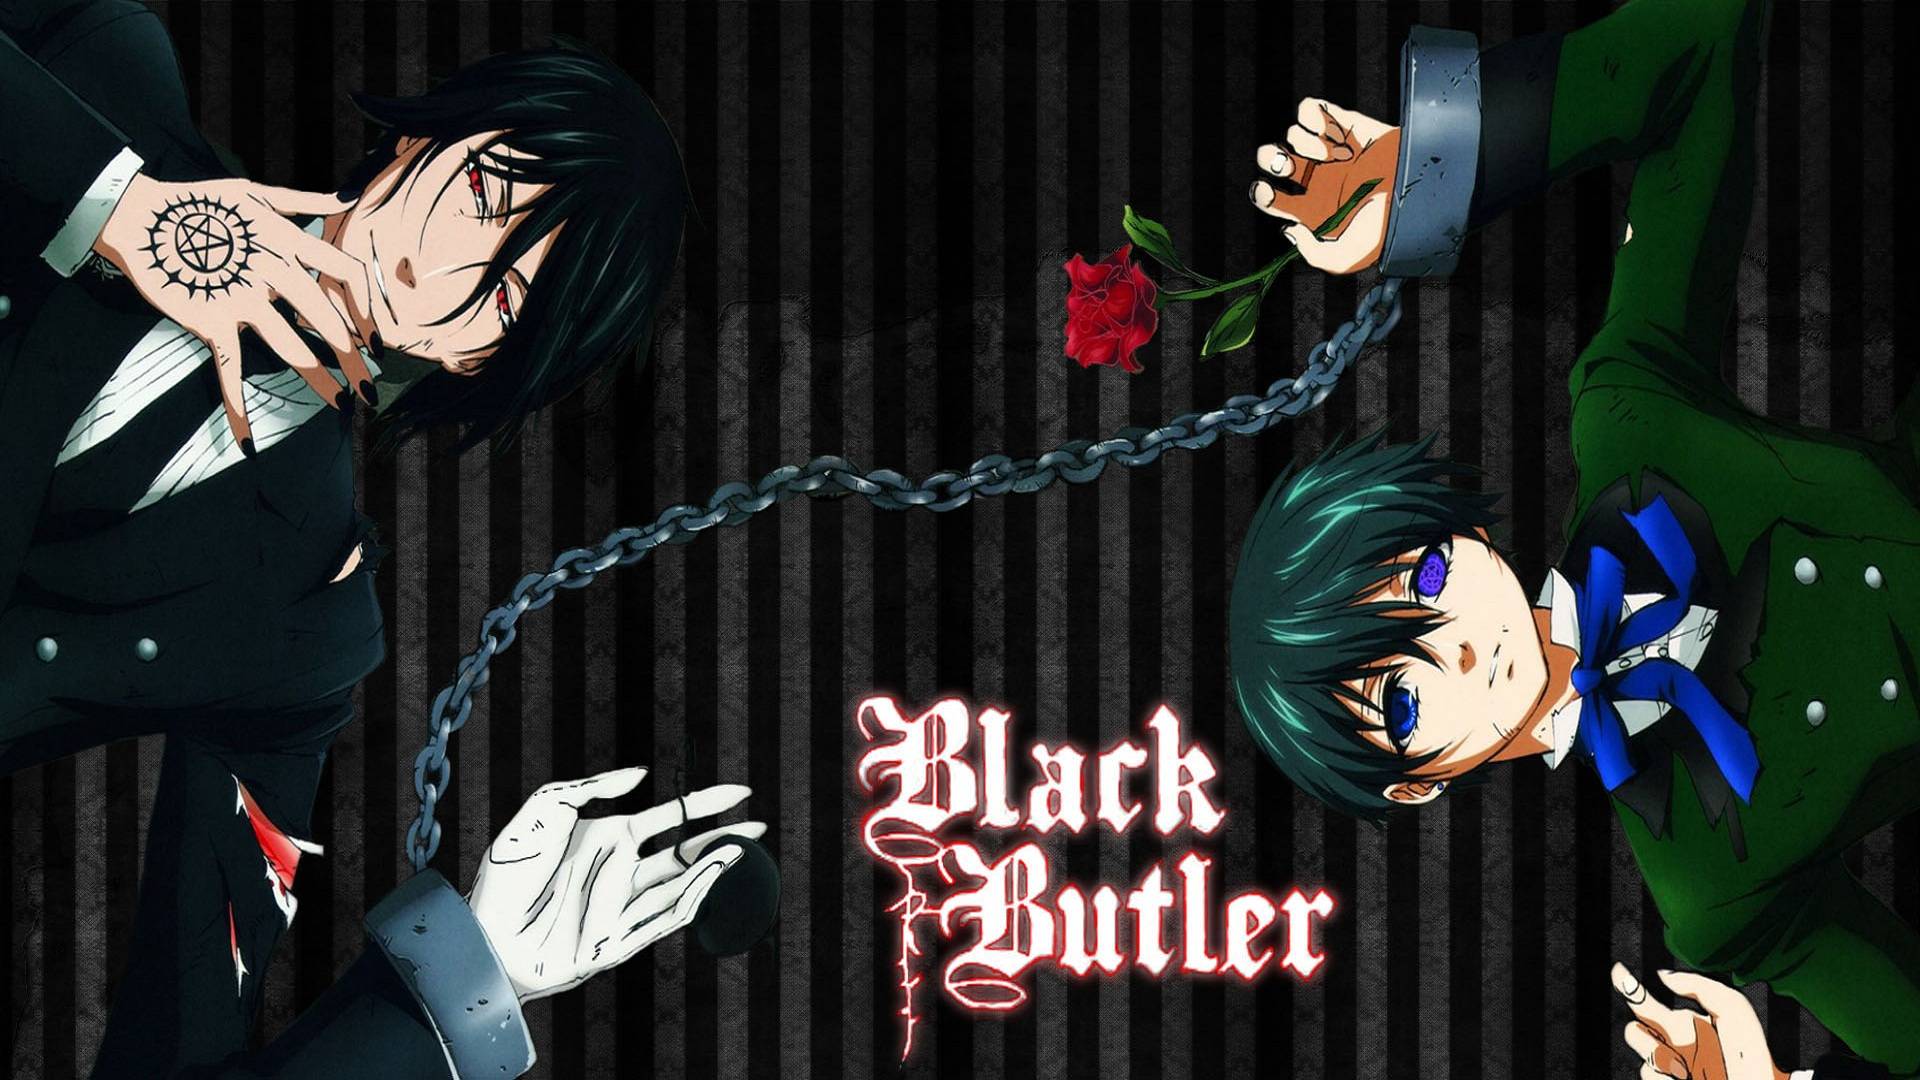 Black Butler Butler Wallpaper